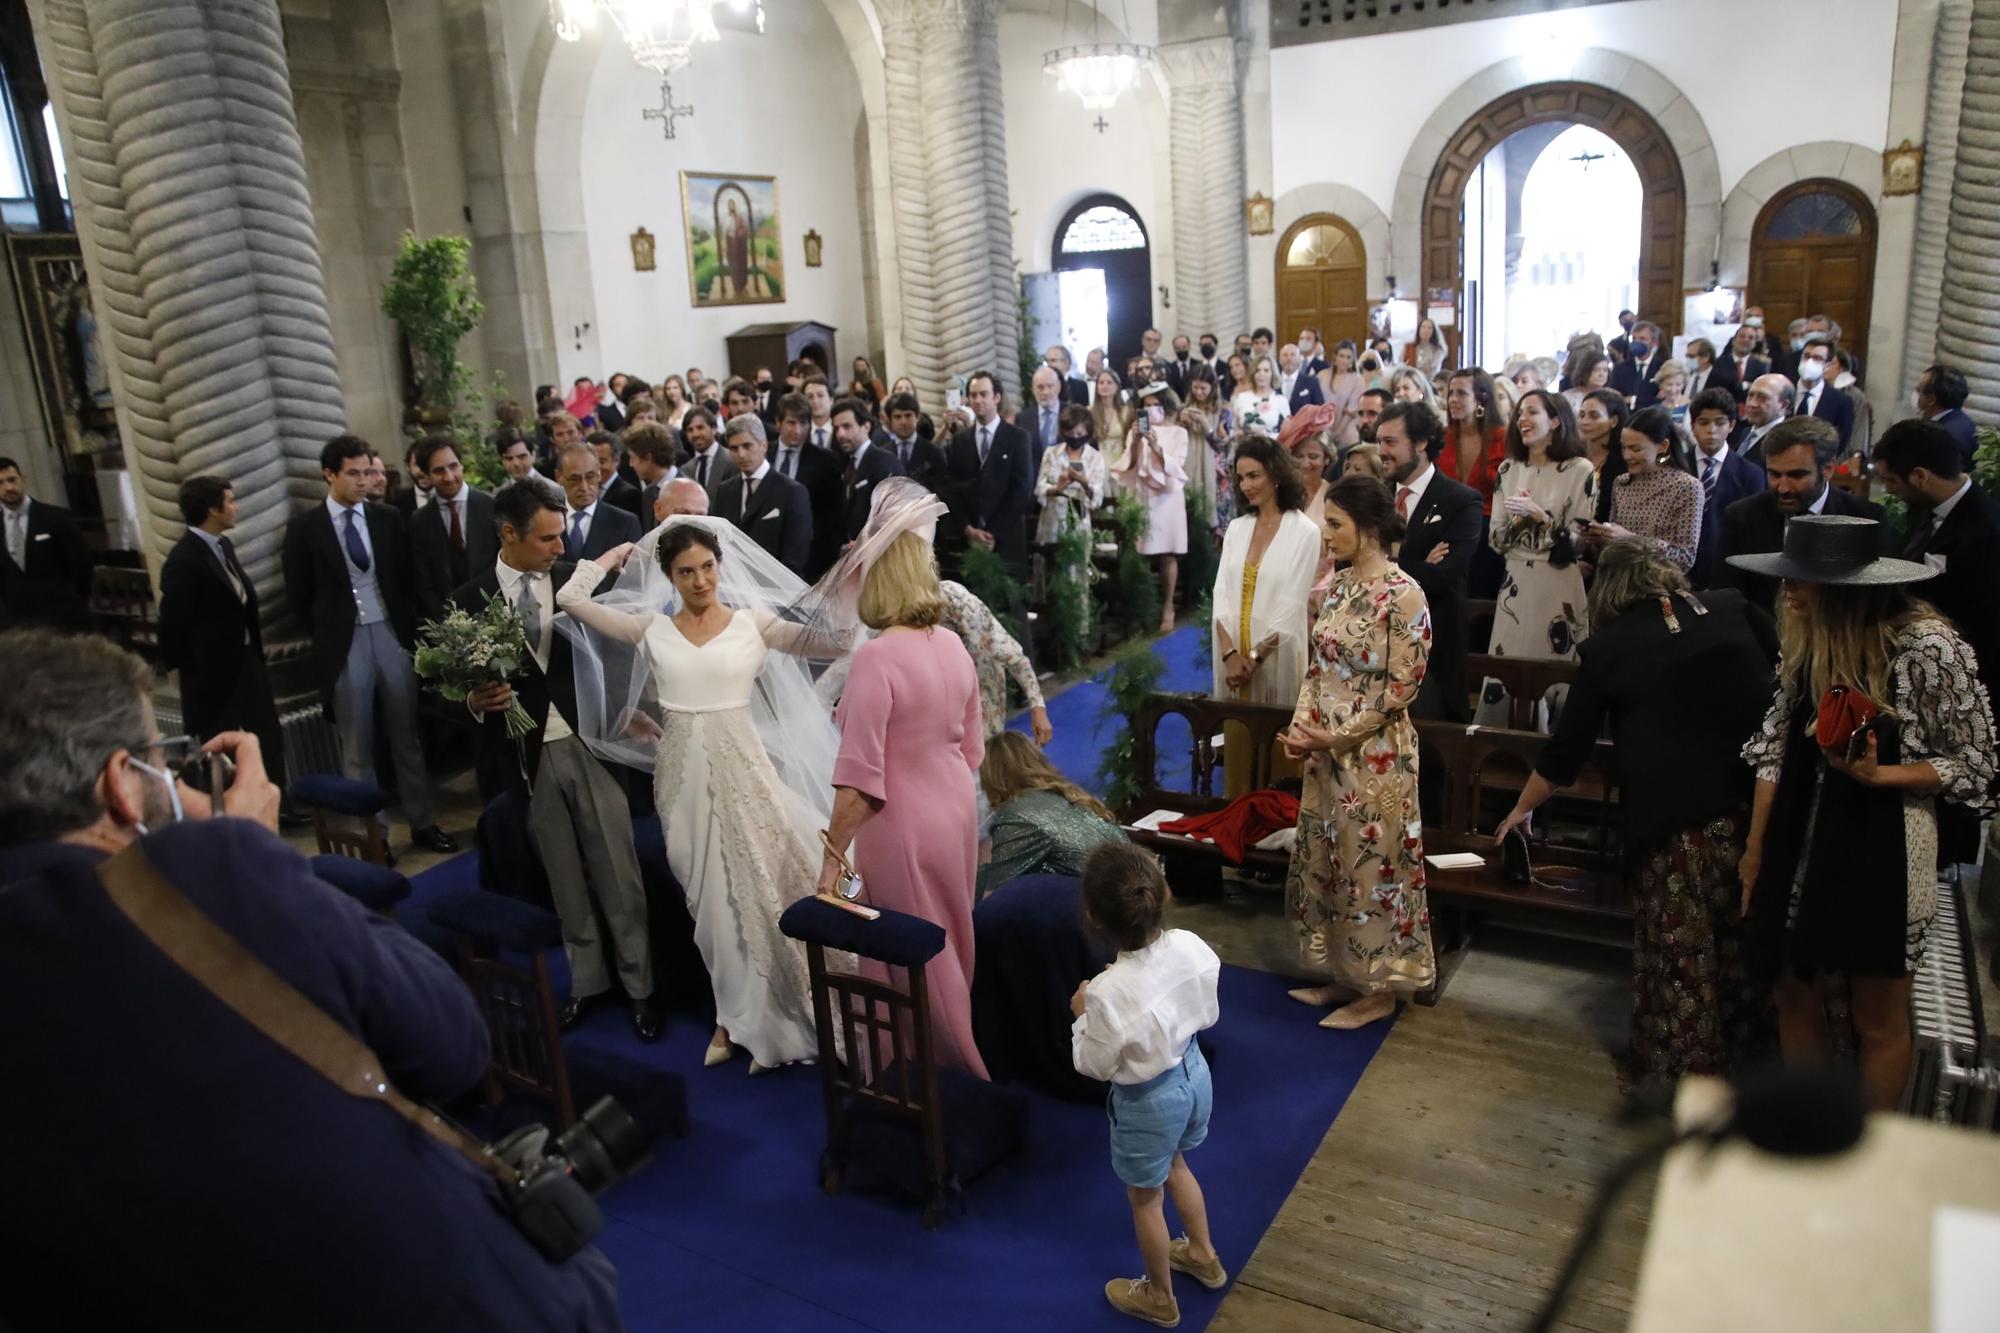 La boda de la "jet set" en Gijón: Pedro Bravo y Carlota Pérez-Pla se dan el sí quiero